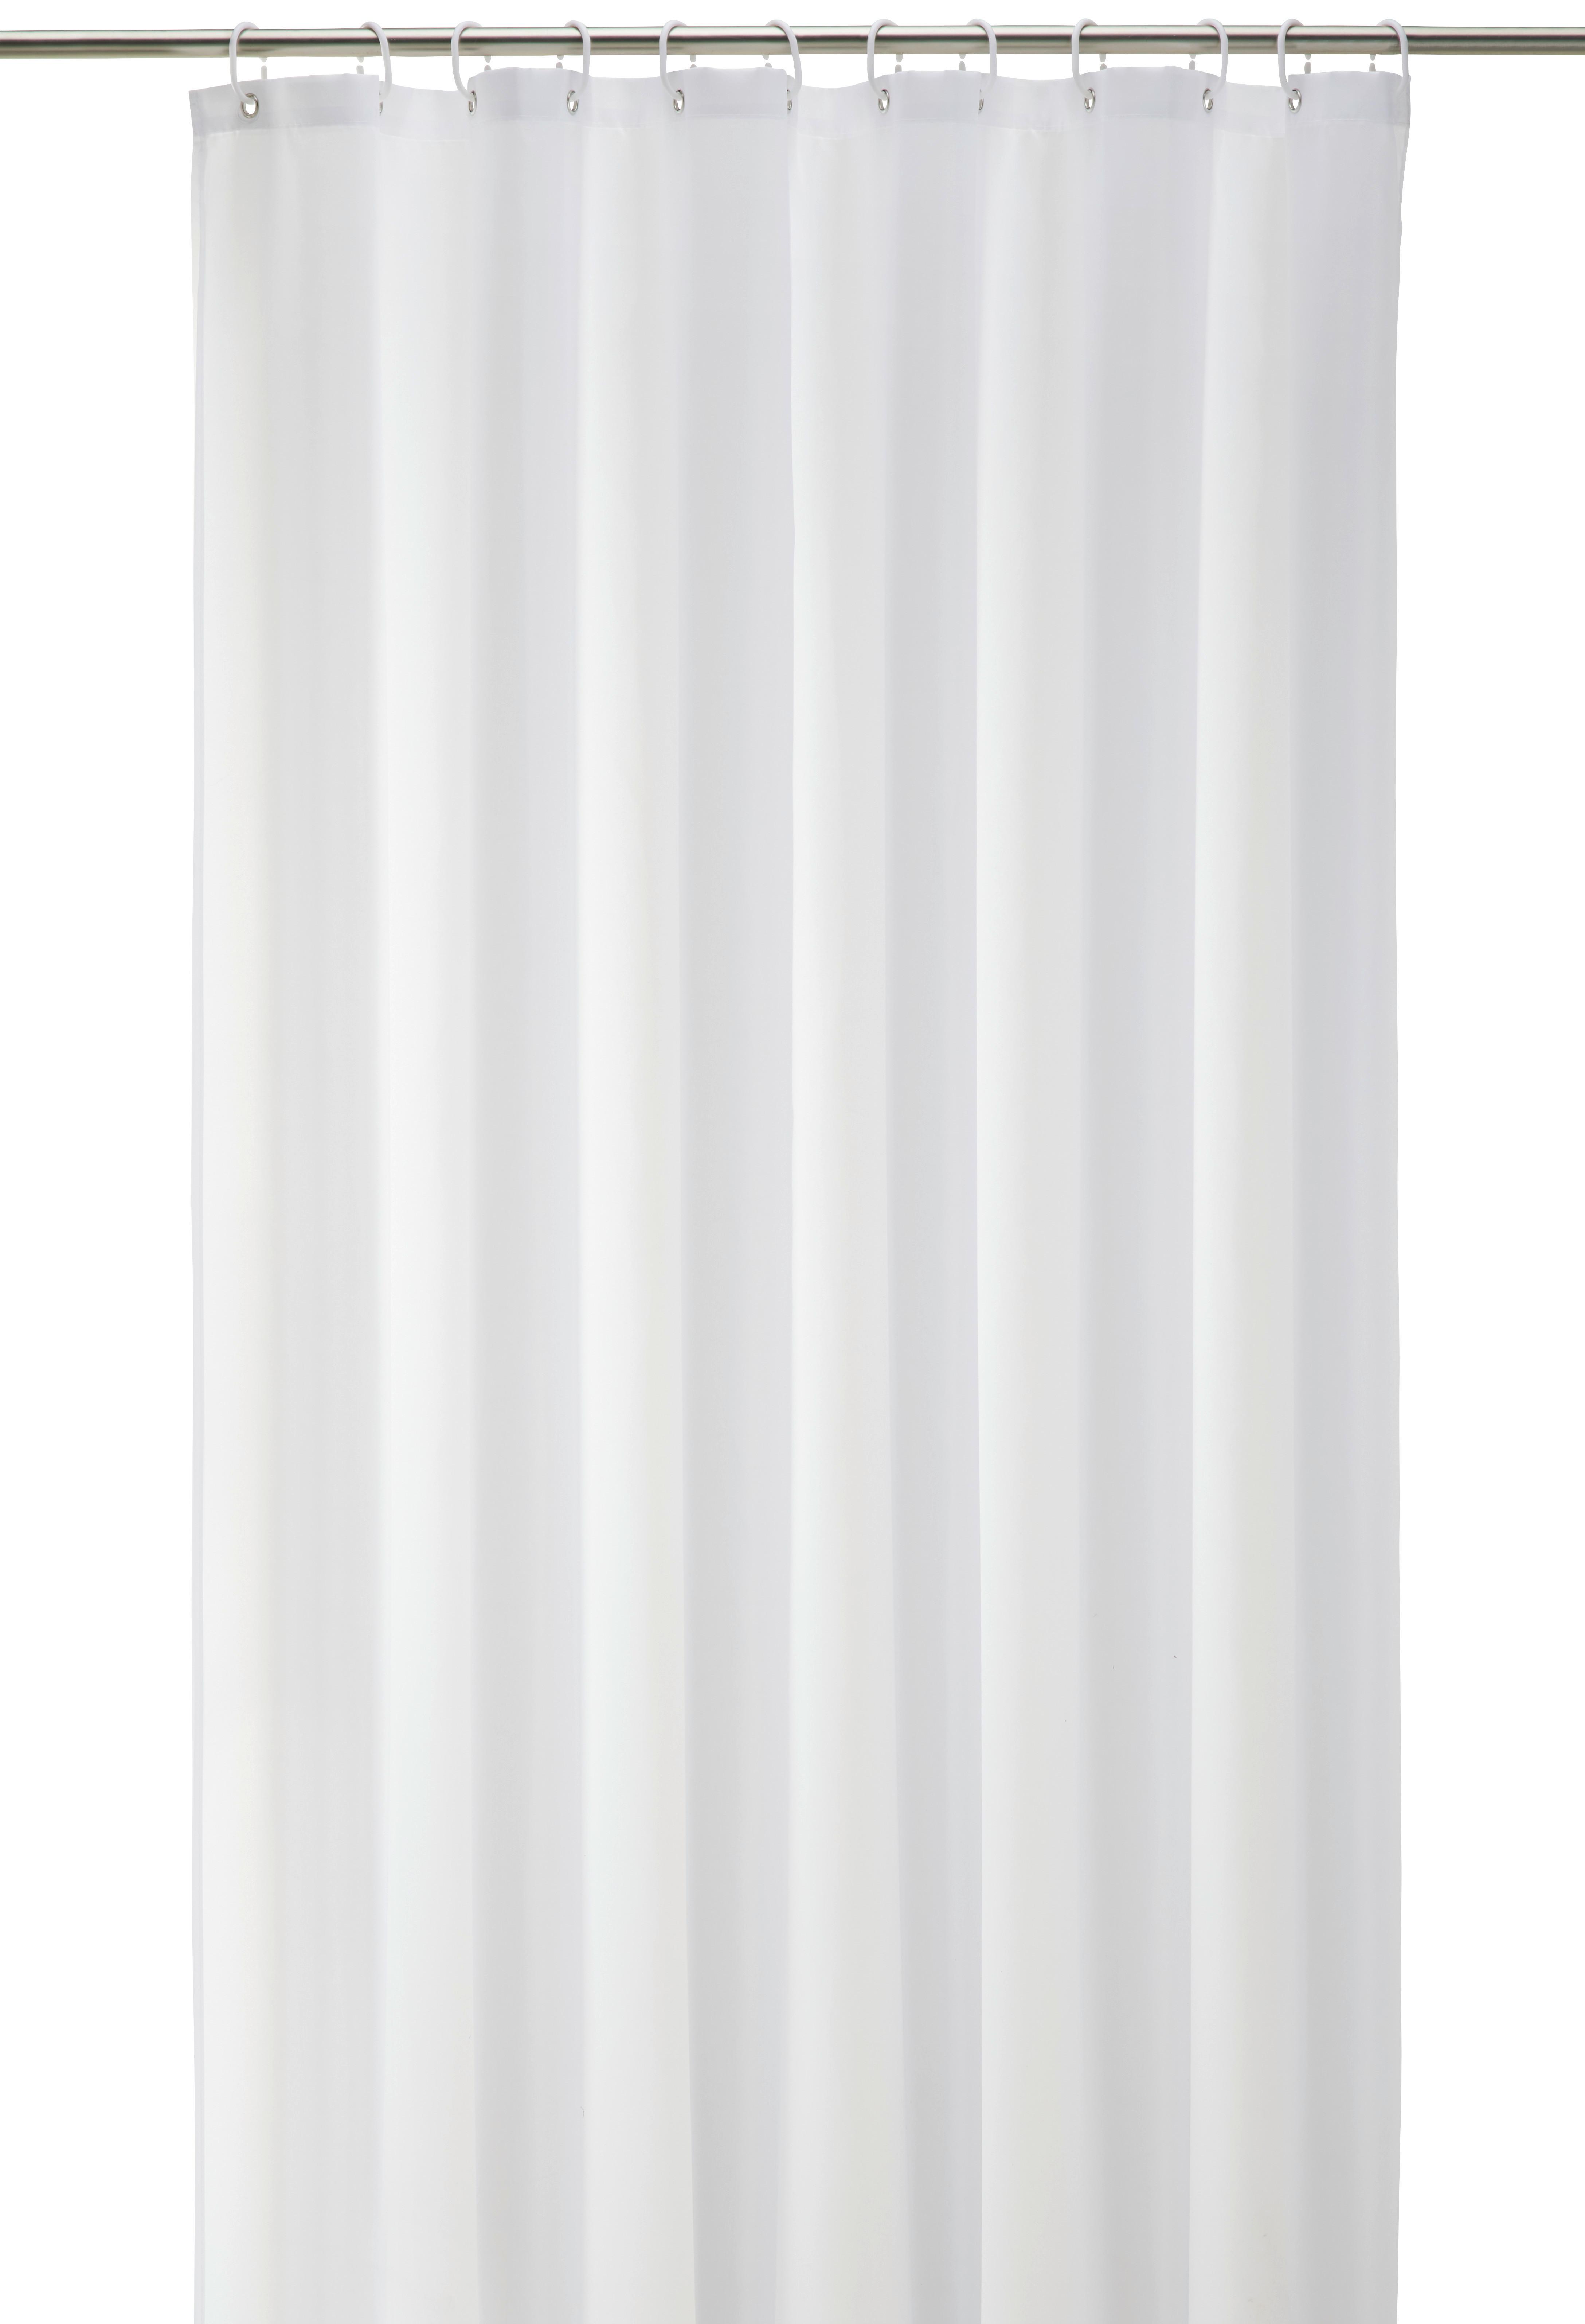 Duschvorhang Uni in Weiß ca. 180x200cm - Weiß, KONVENTIONELL, Textil (180/200cm) - Modern Living